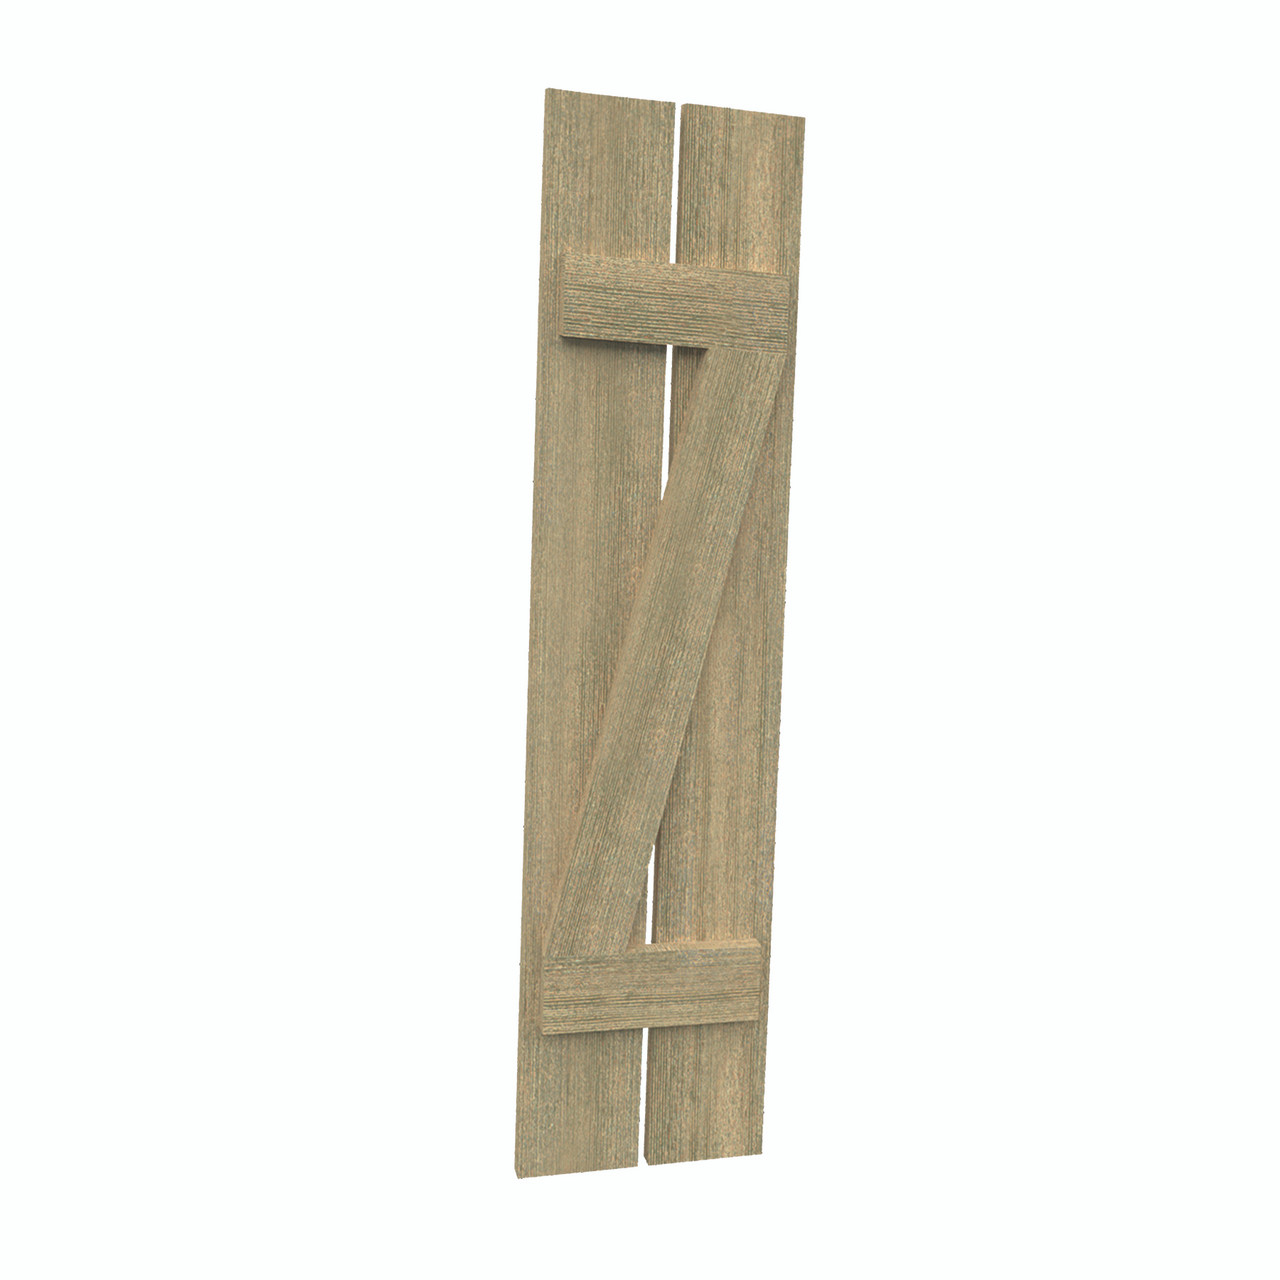 12 inch by 116 inch Plank Shutter with 2-Plank, Z-Batten